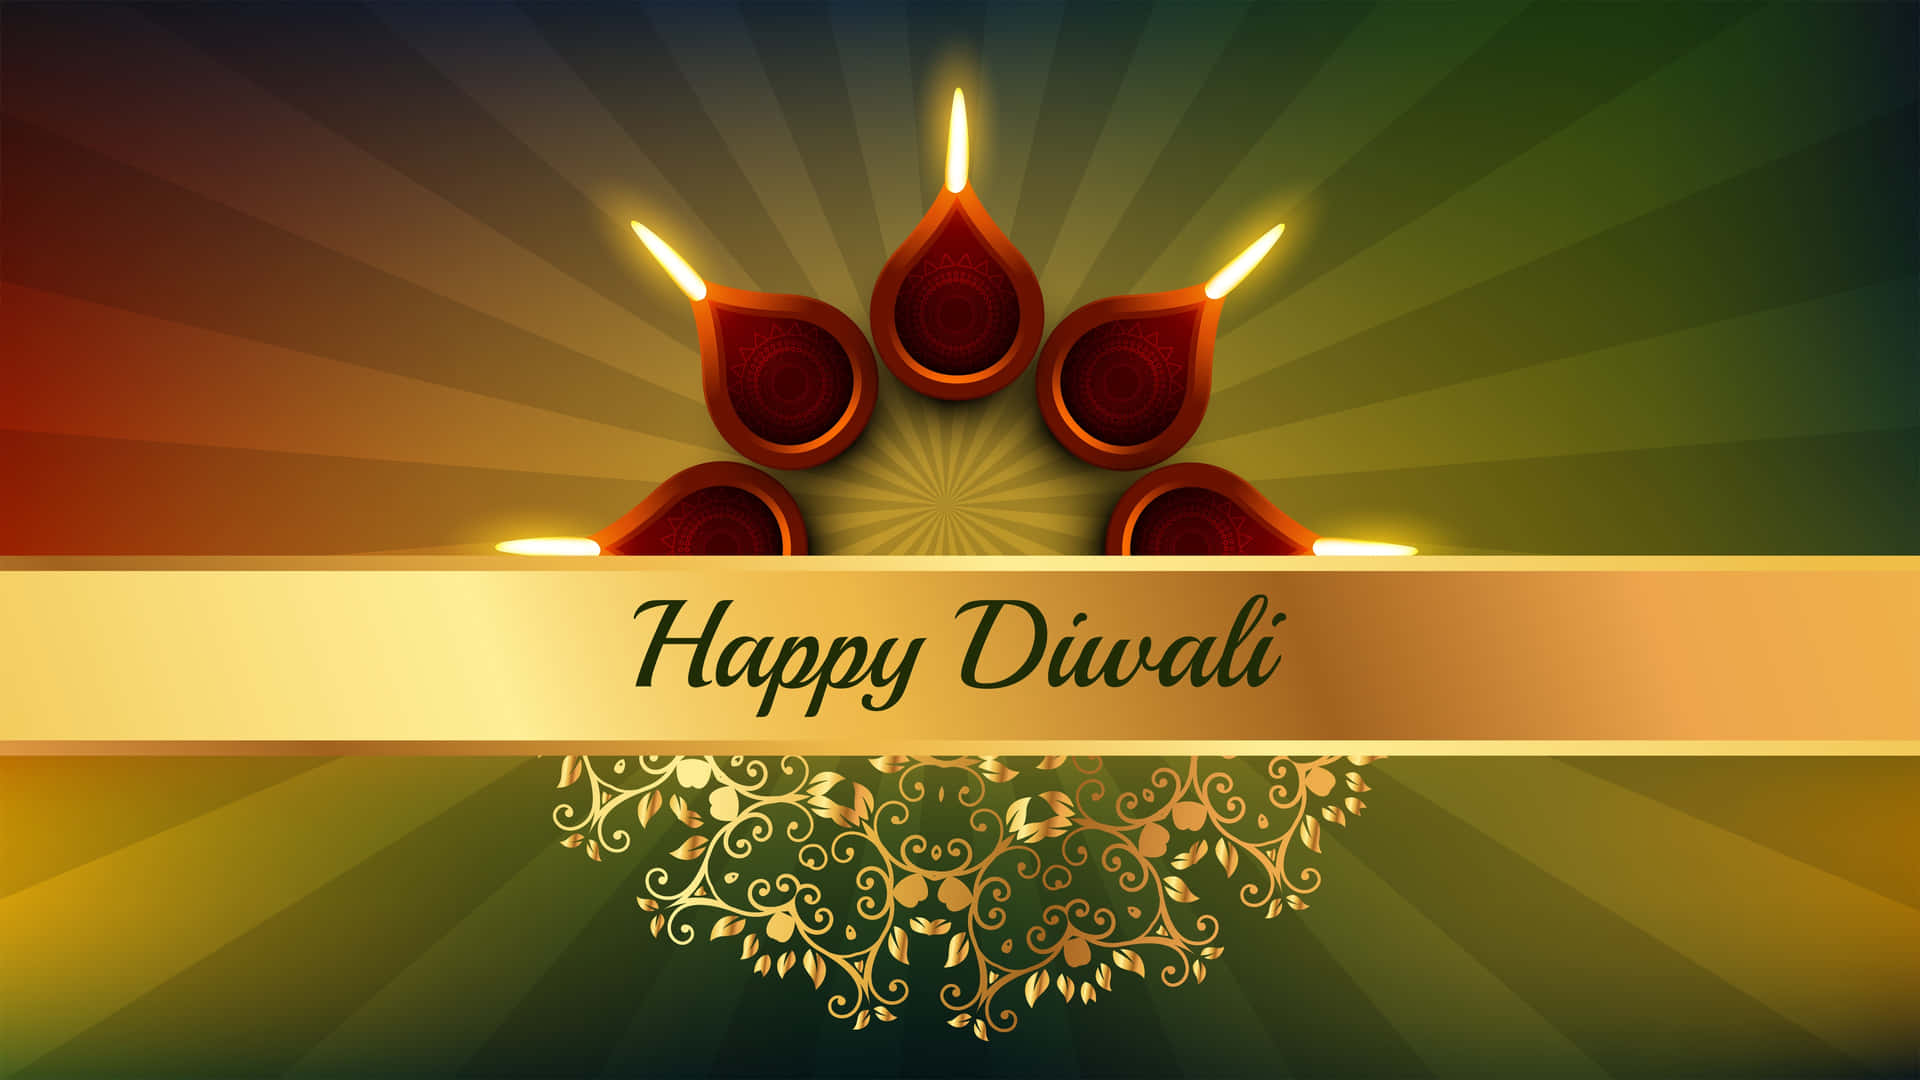 Cartãode Felicitações De Diwali Com Velas E Fundo Dourado